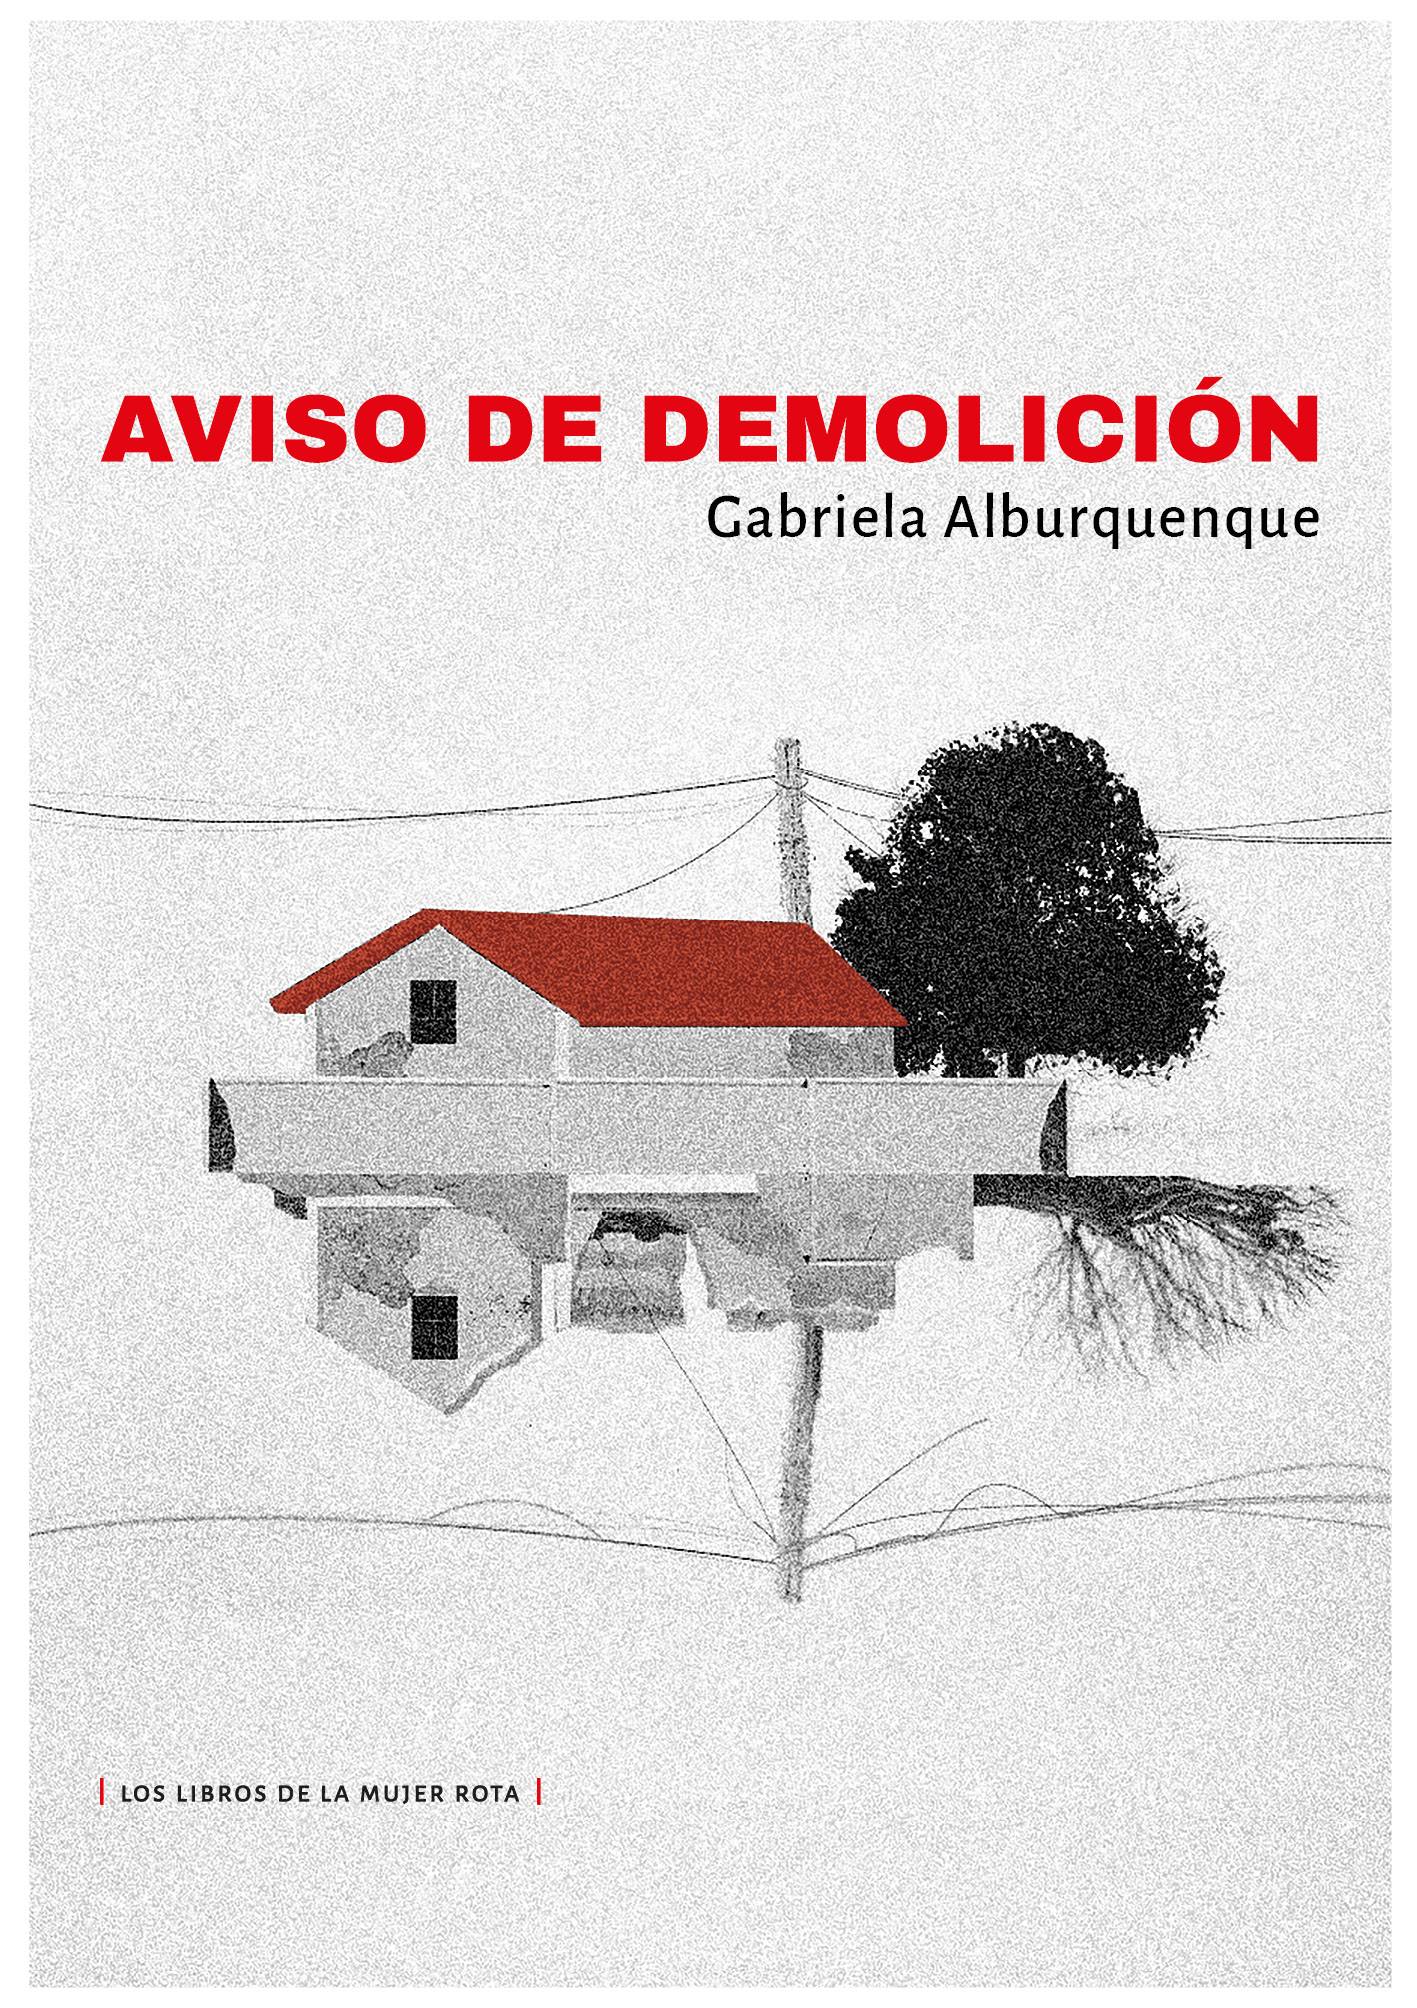 Este viernes 2 de diciembre se presenta la novela Aviso de demolición de la escritora chilena Gabriela Alburquenque en el Espacio Cultural de Ñuñoa